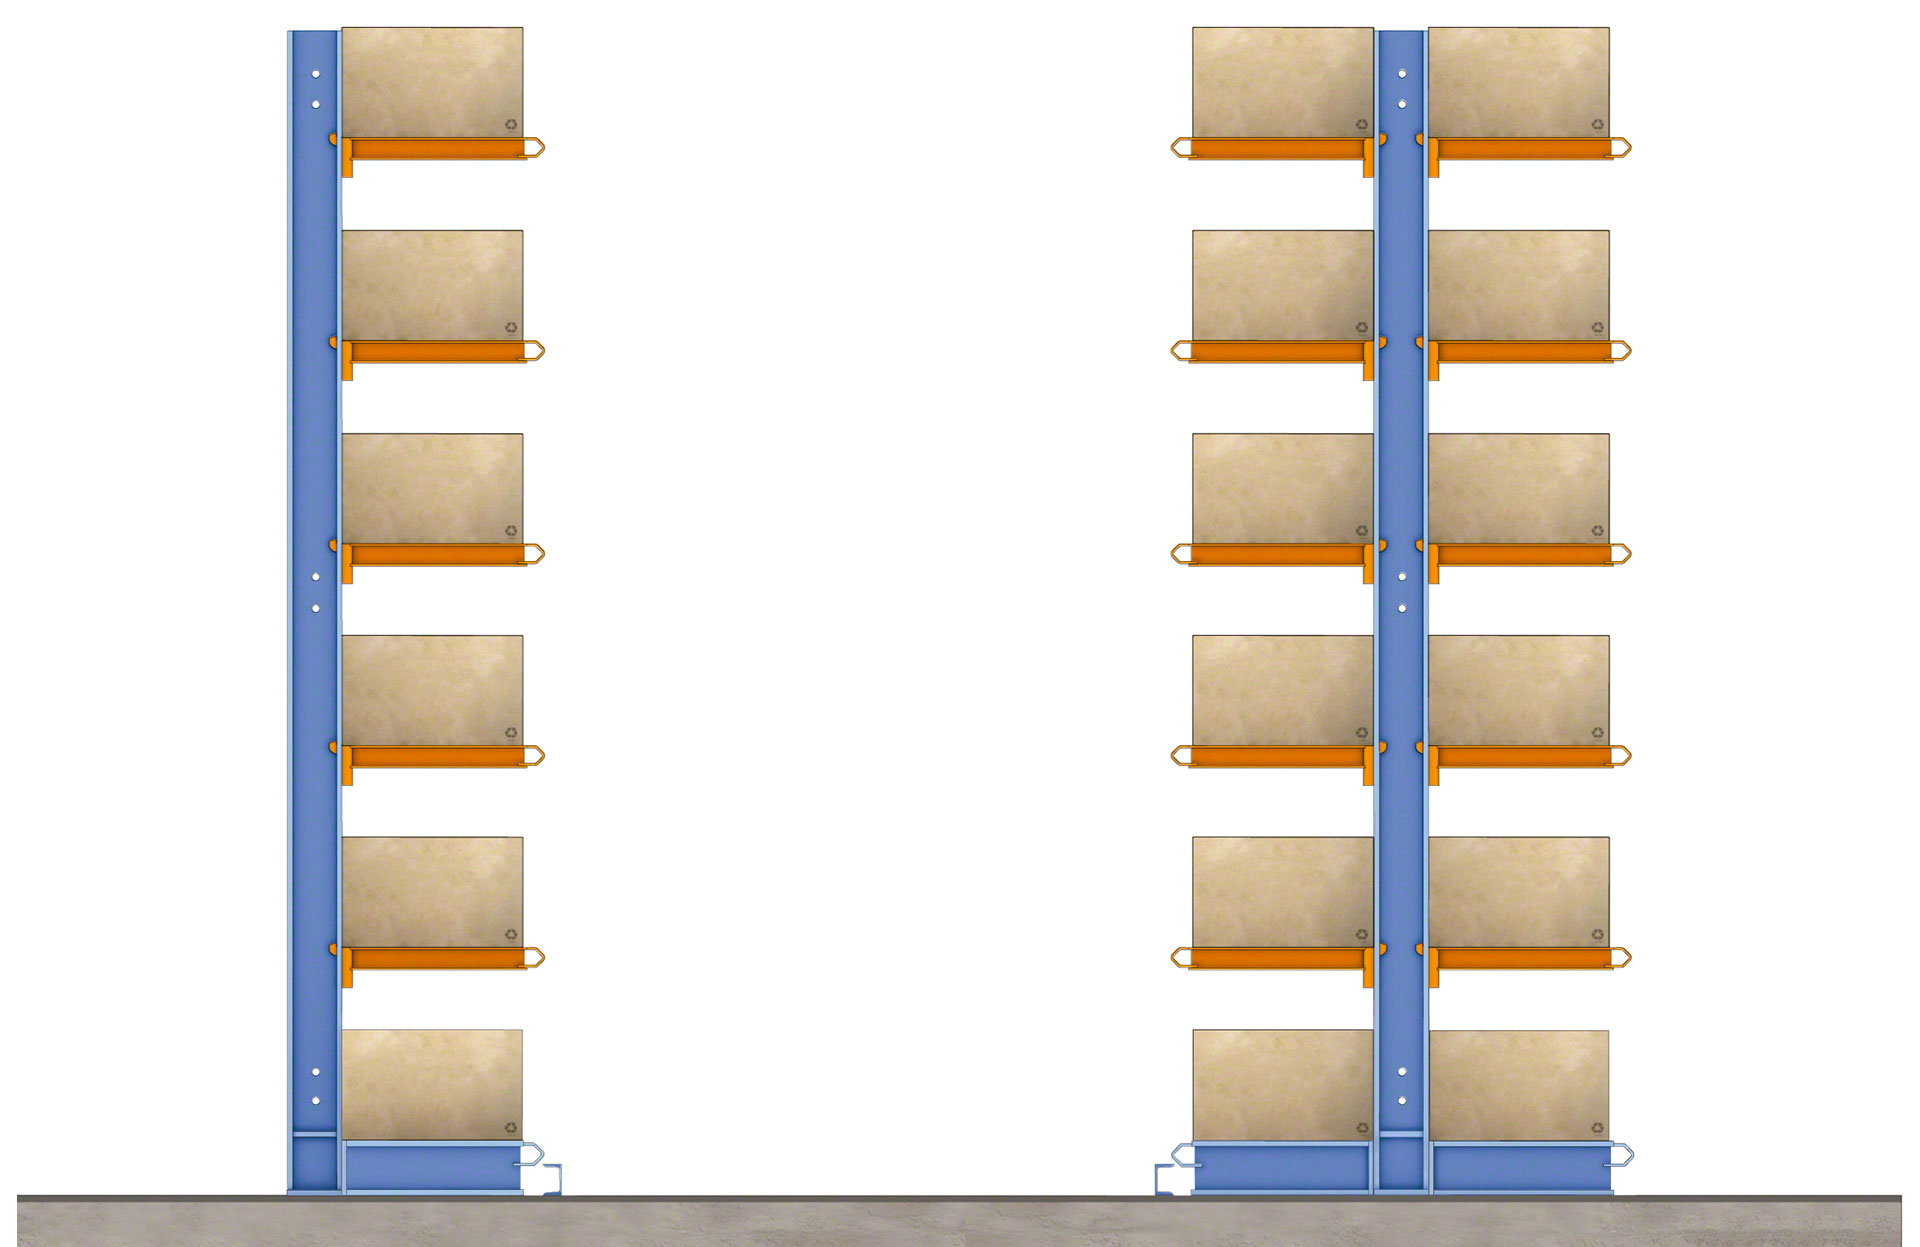 Según la cantidad de lados habilitados para el almacenaje, las estanterías cantilever pueden ser simples o dobles